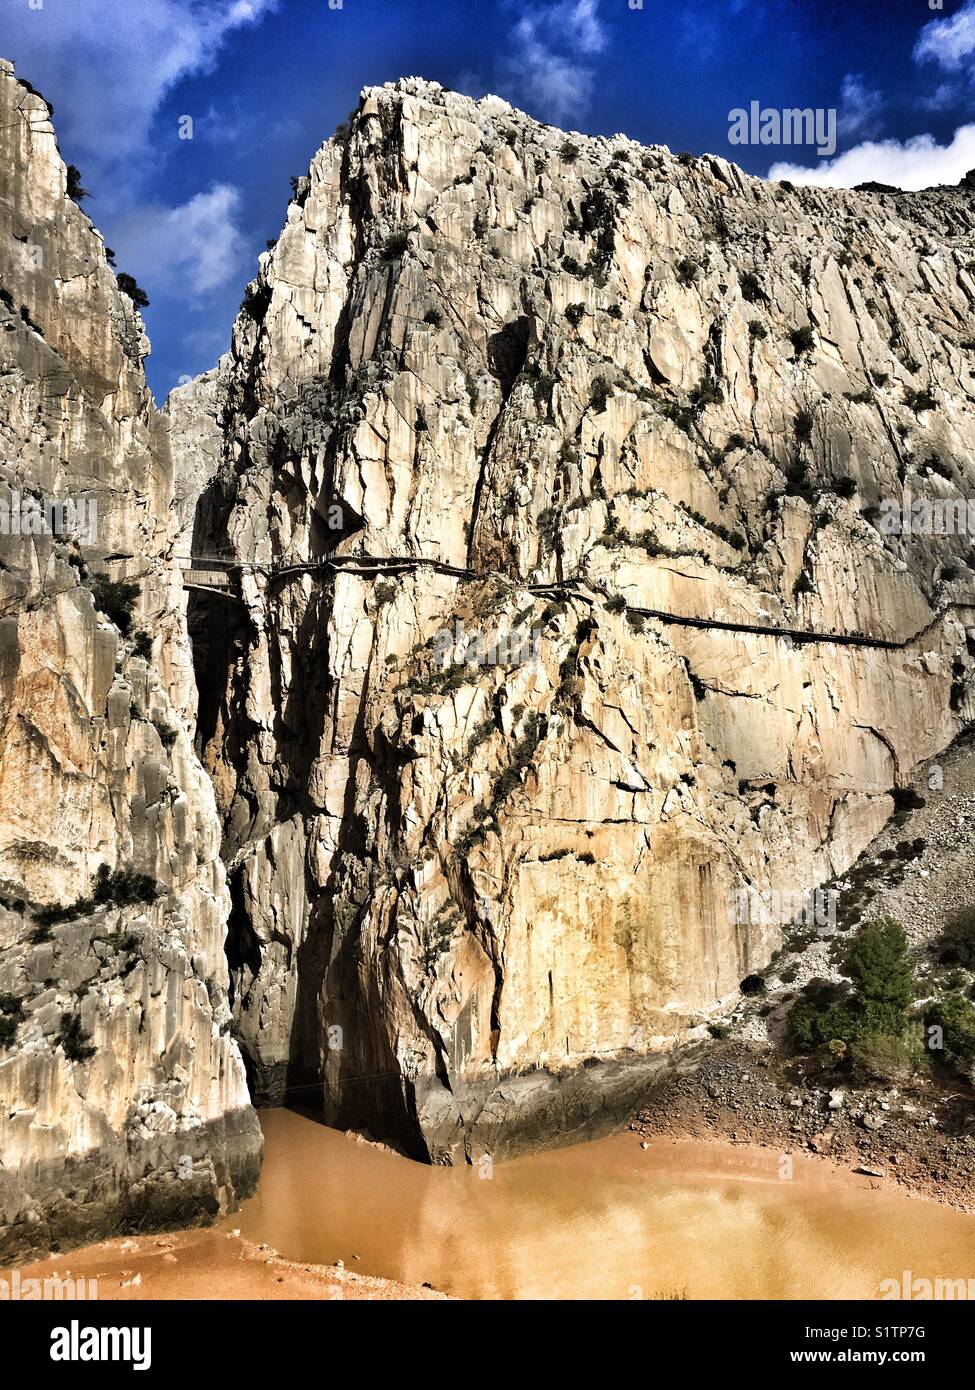 Caminito del Rey, El Chorro trail, Spain Stock Photo